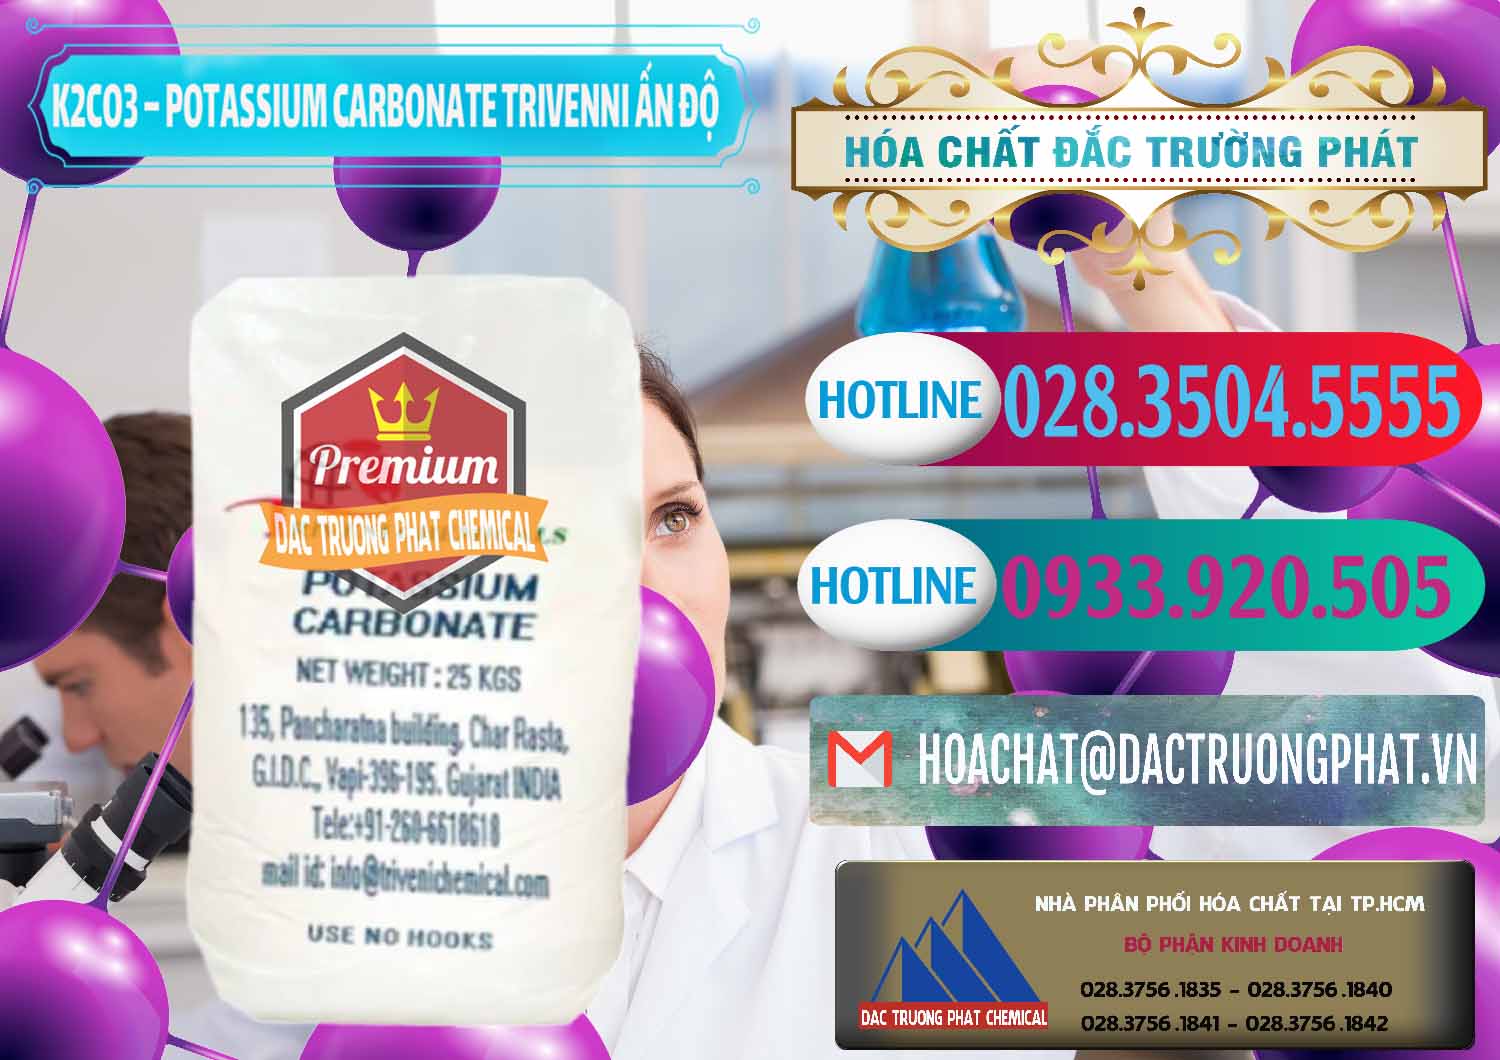 Công ty kinh doanh và bán K2Co3 – Potassium Carbonate Trivenni Ấn Độ India - 0473 - Cty cung cấp & bán hóa chất tại TP.HCM - truongphat.vn